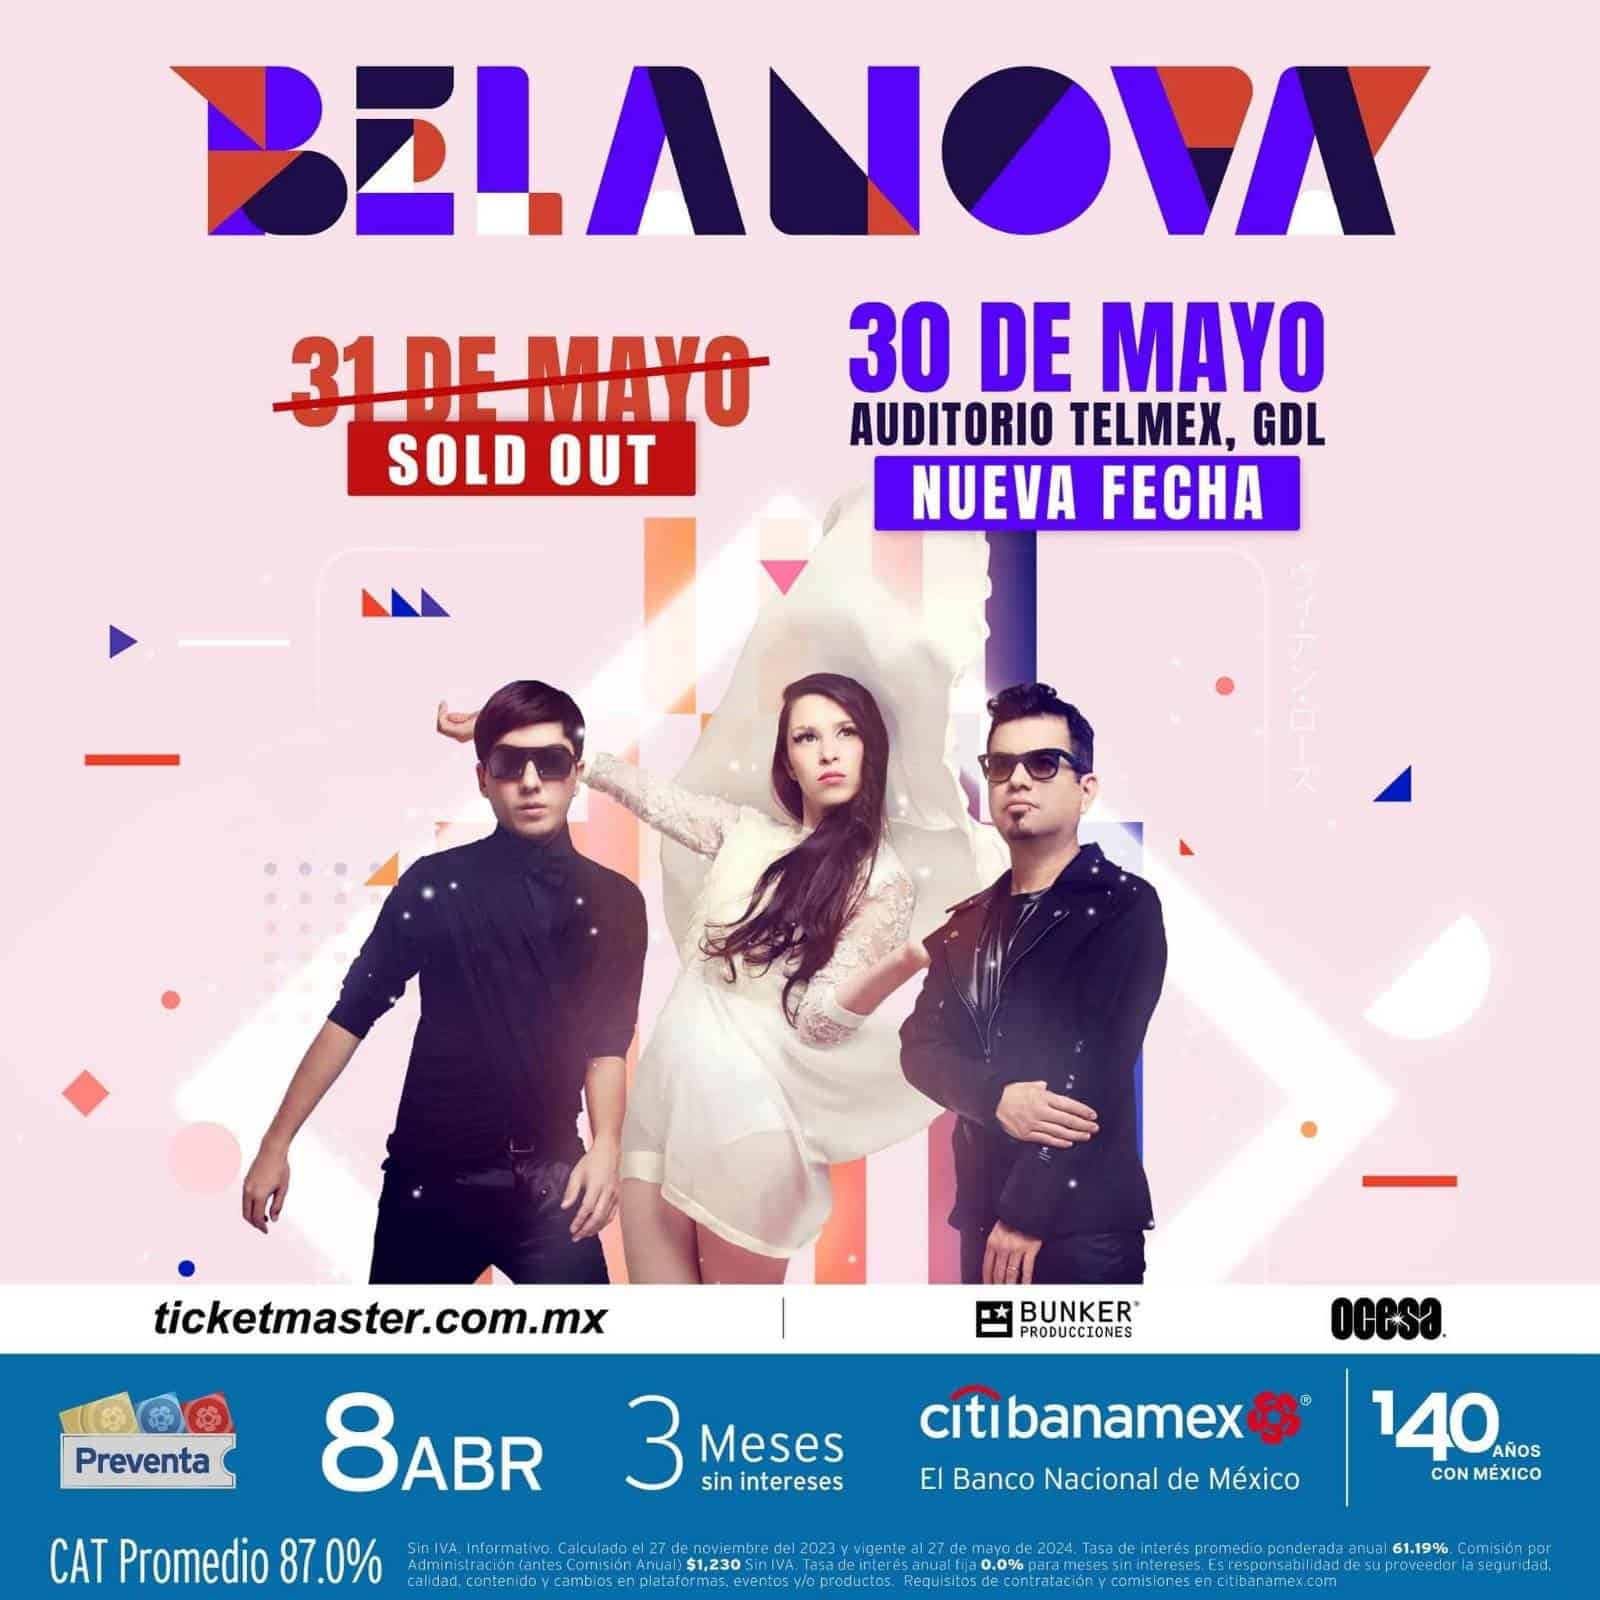 Belanova anuncia segundo concierto en el Auditorio Telmex de Guadalajara